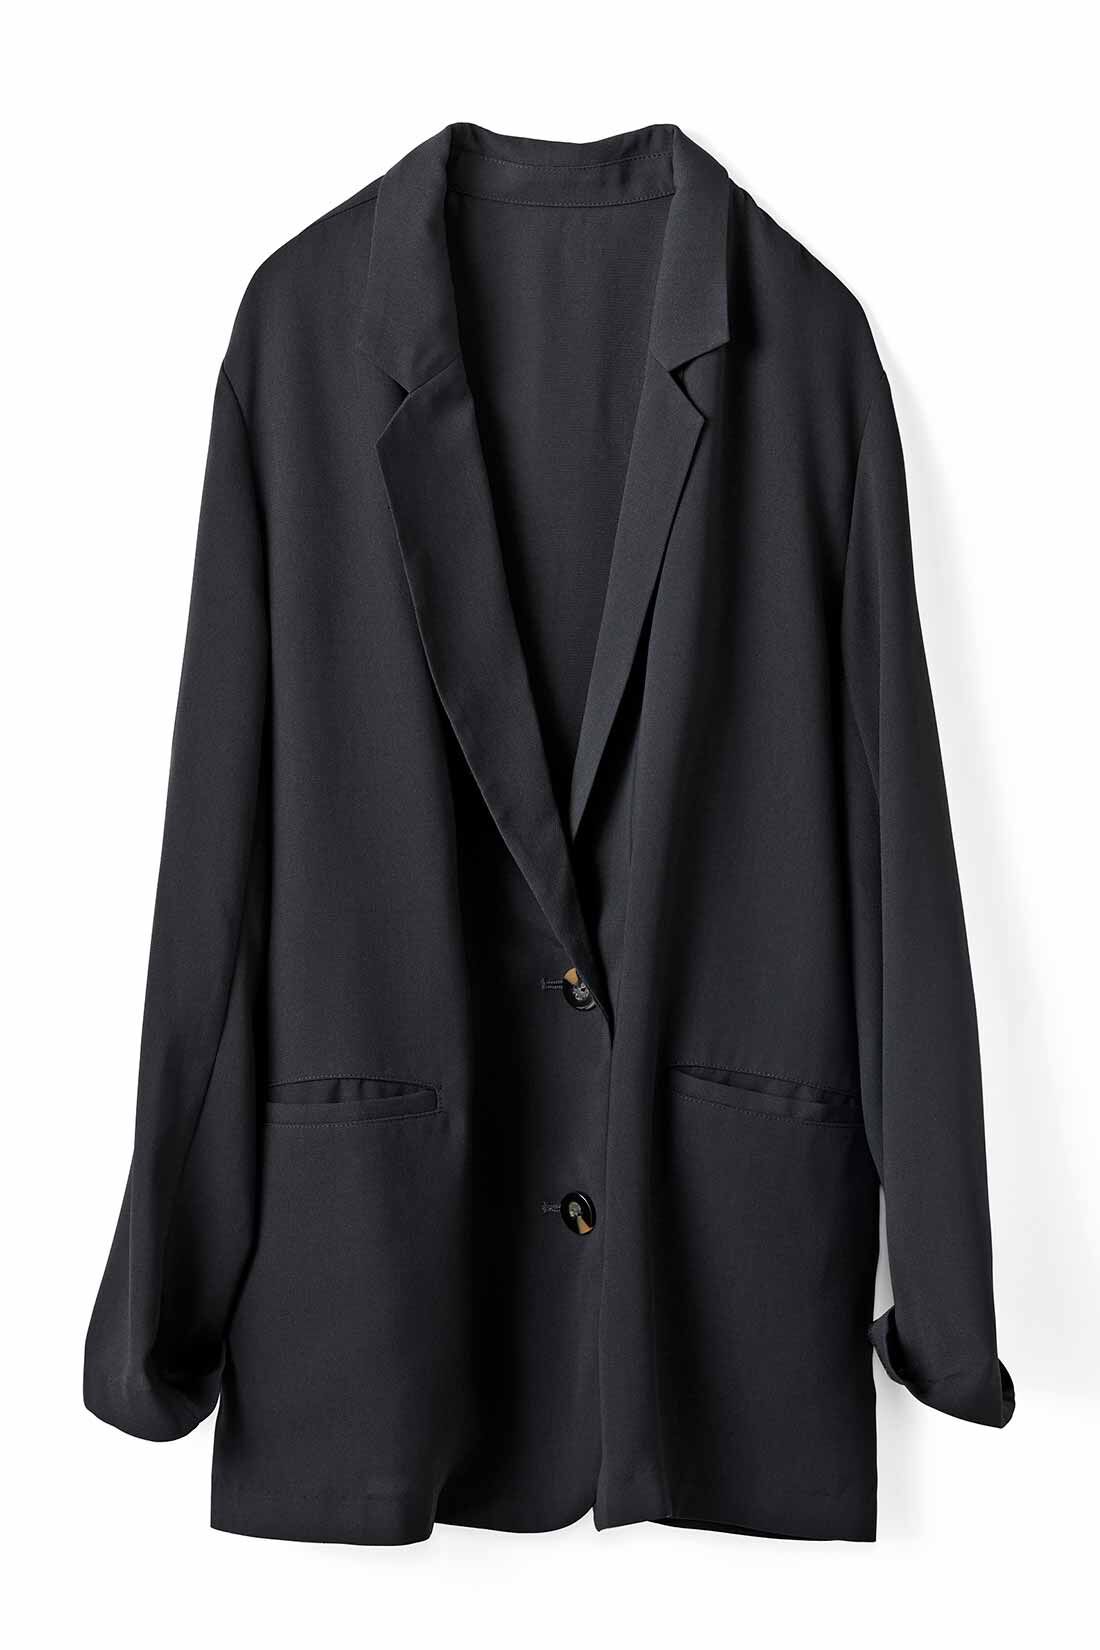 IEDIT[イディット]　接触冷感でサラリと着られる 軽やかジャケット〈ベージュ〉|〈ブラック〉